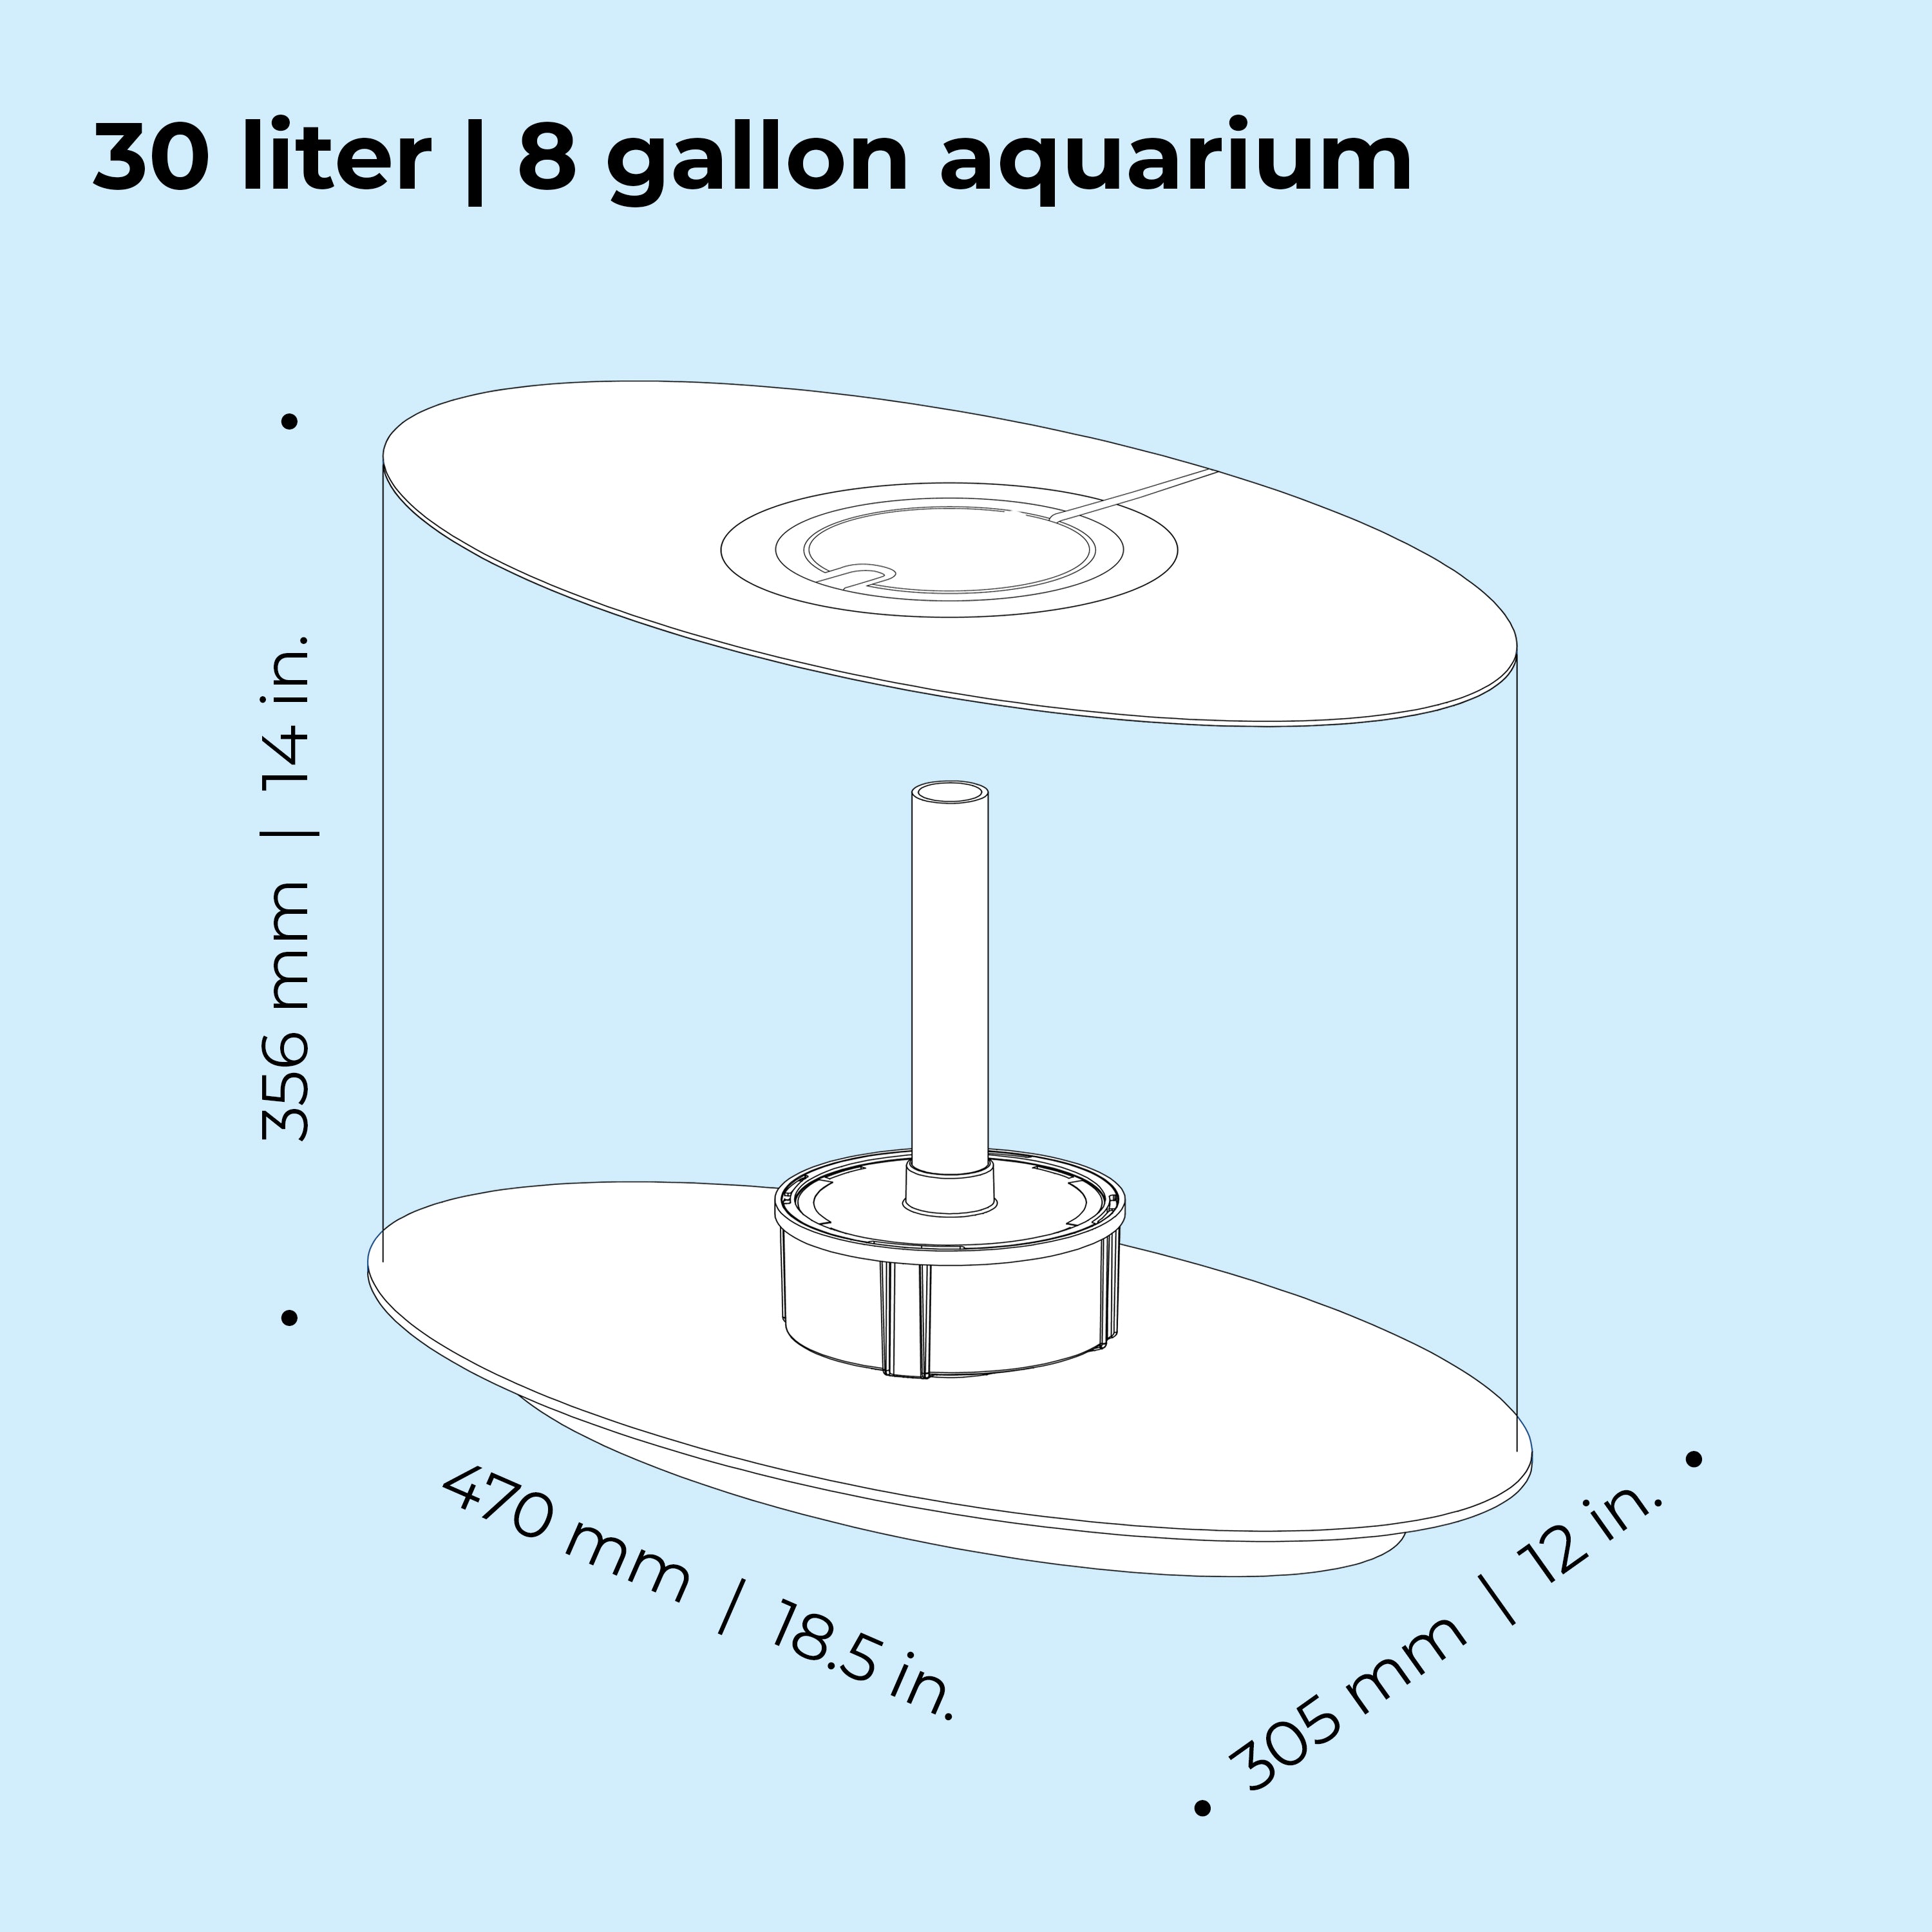 LOOP 30 Aquarium with MCR Light - 8 gallon - Dimensions